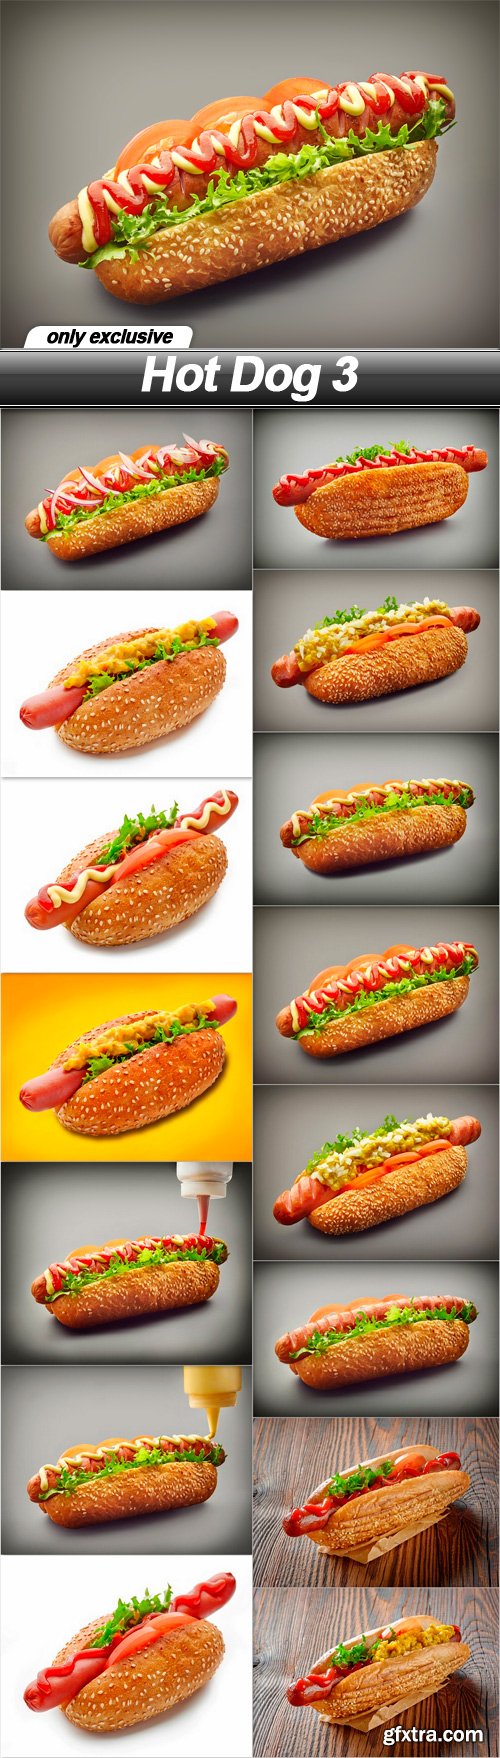 Hot Dog 3 - 15 UHQ JPEG